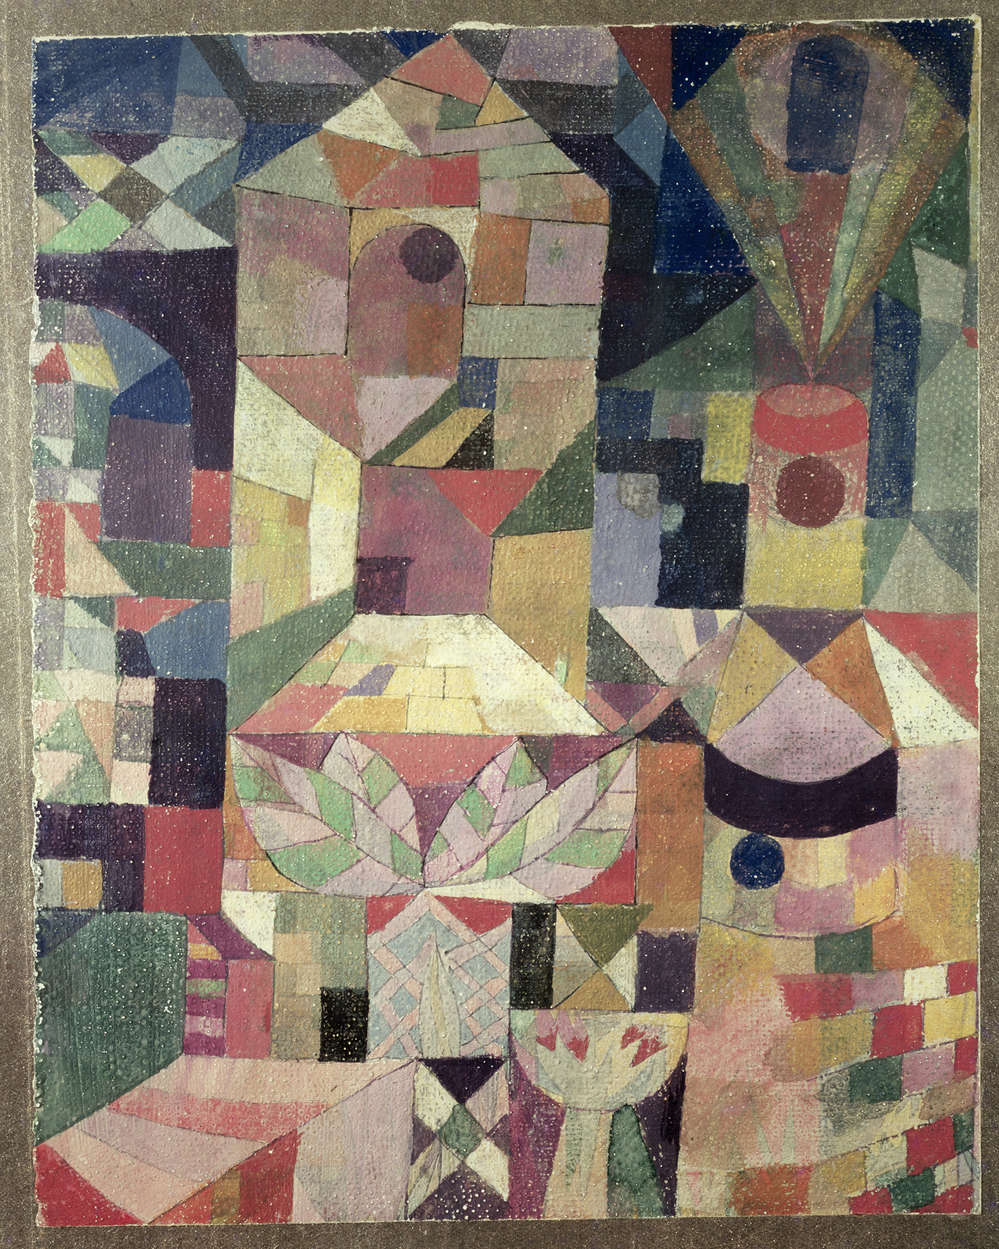             Papier peint panoramique "Jardin du château" de Paul Klee
        